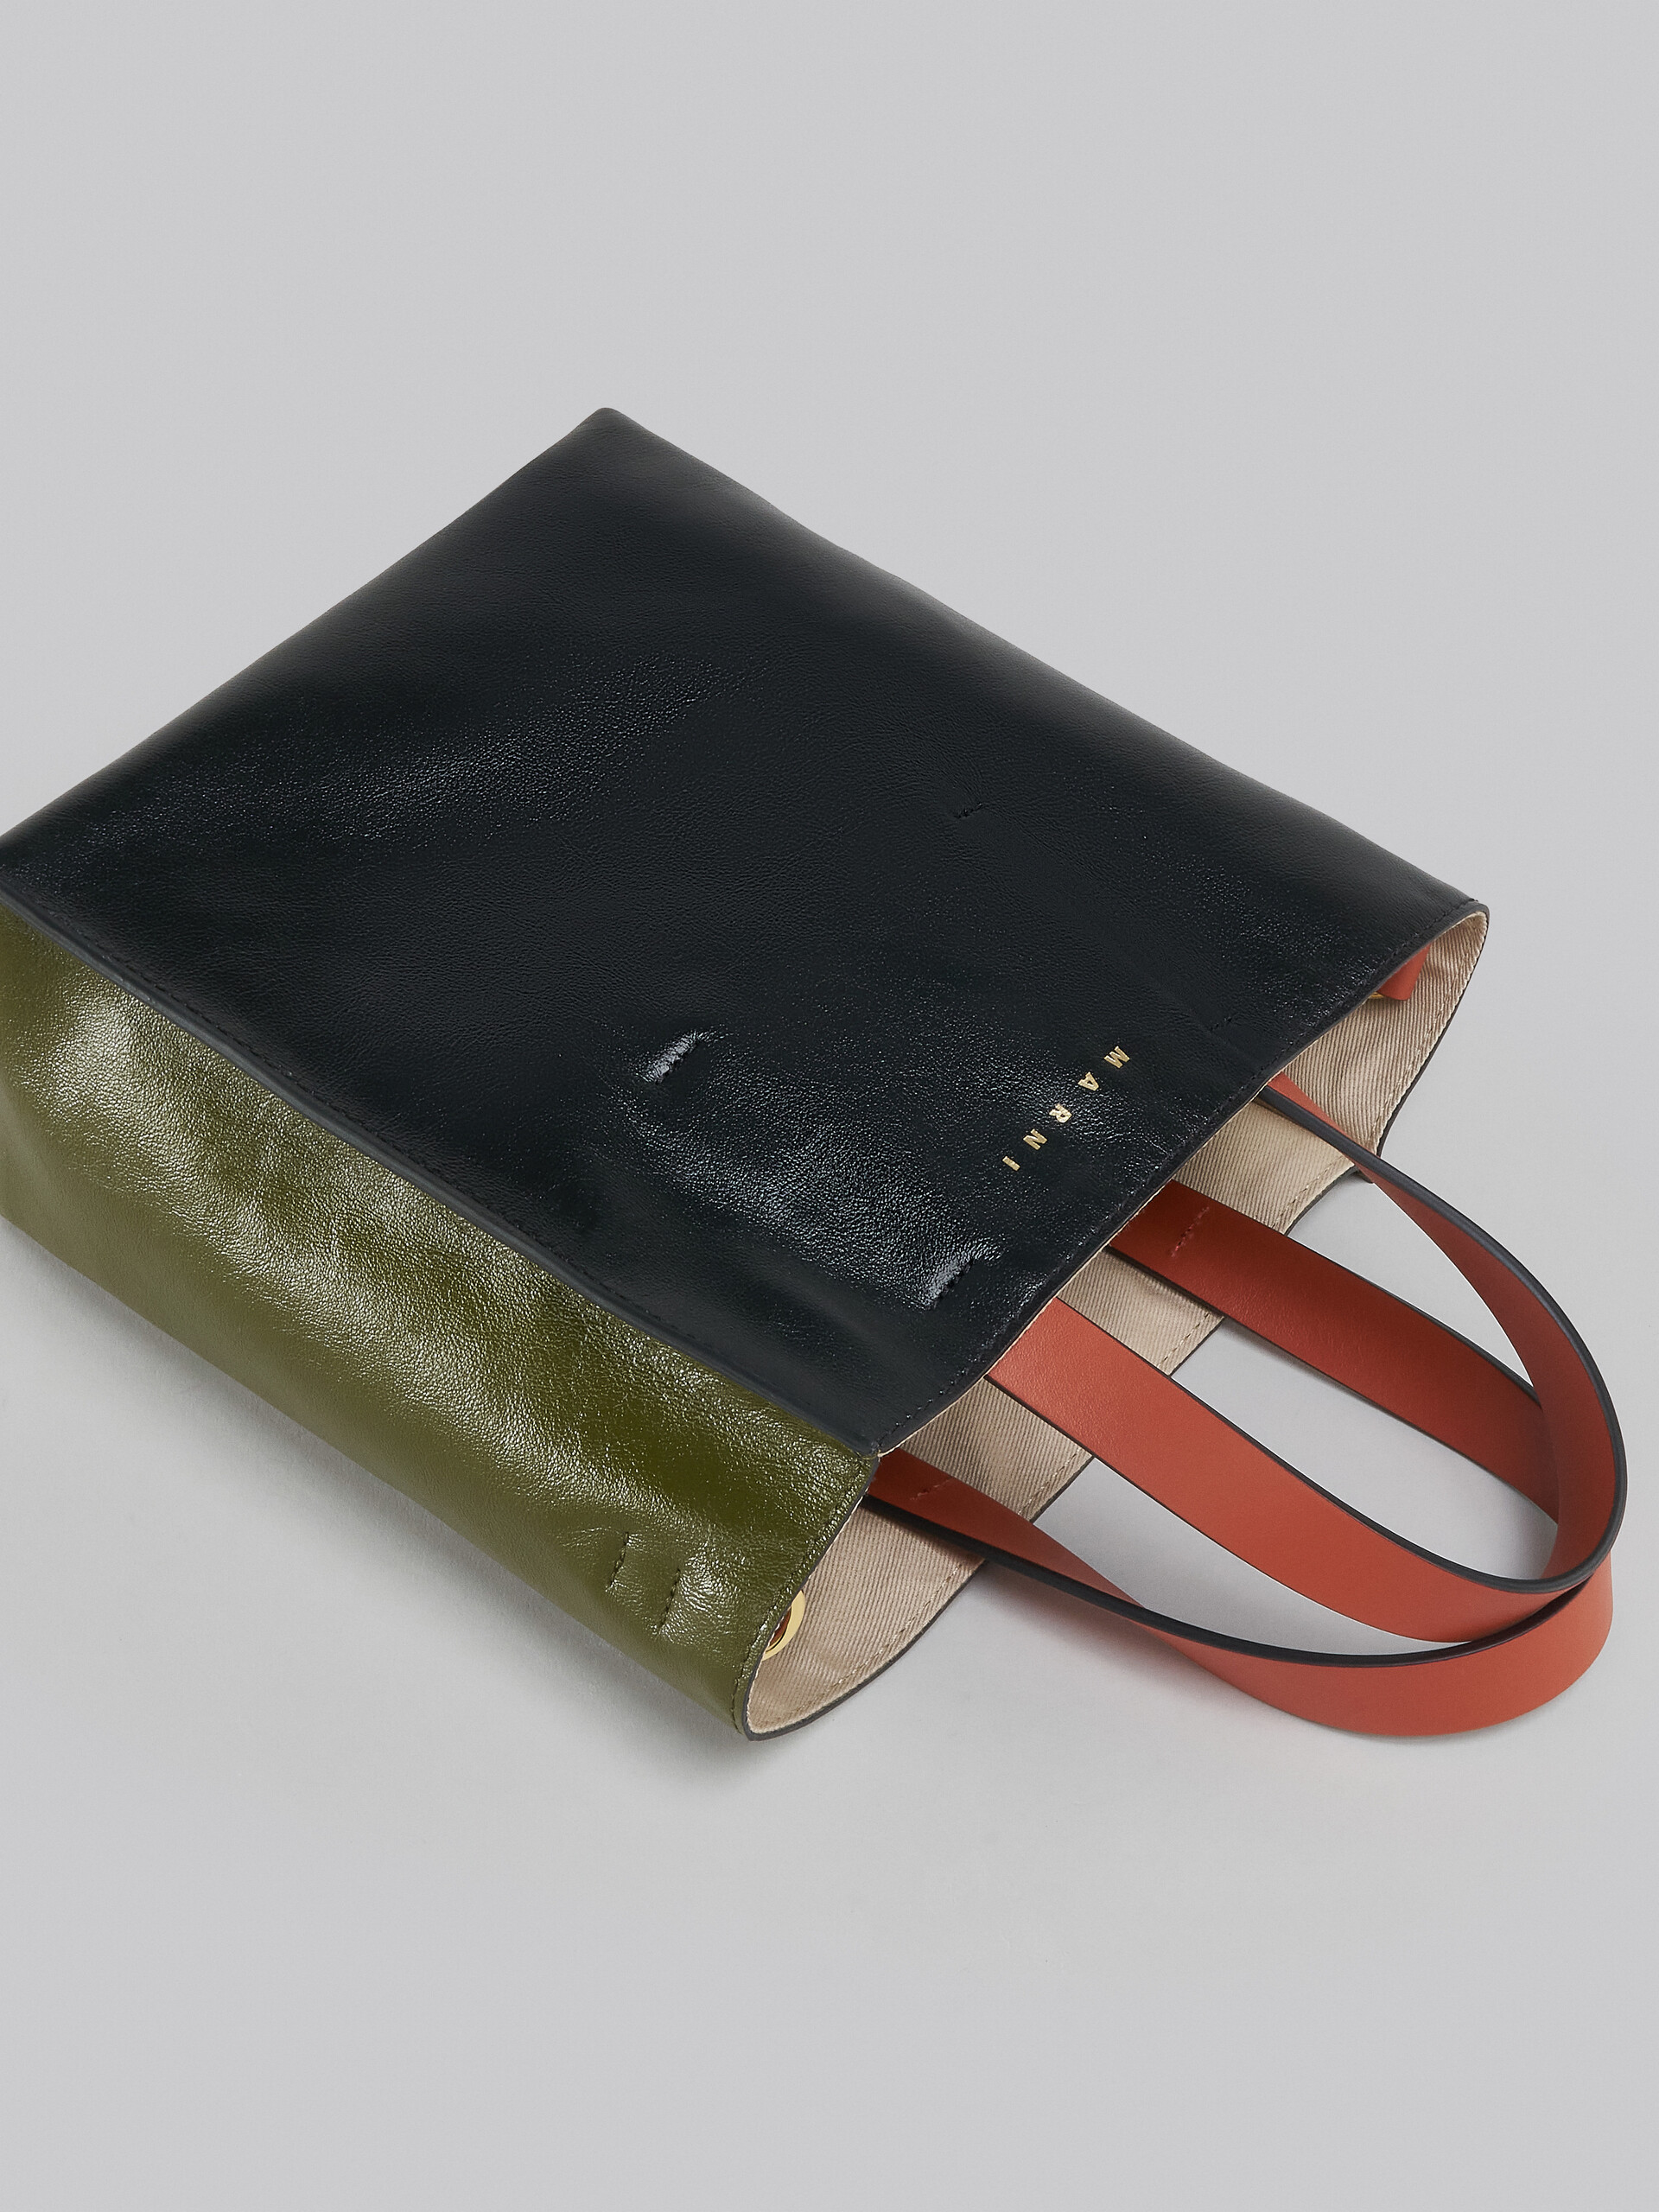 Mini-Tasche Museo Soft aus Leder in Grau, Schwarz und Rot - Shopper - Image 5